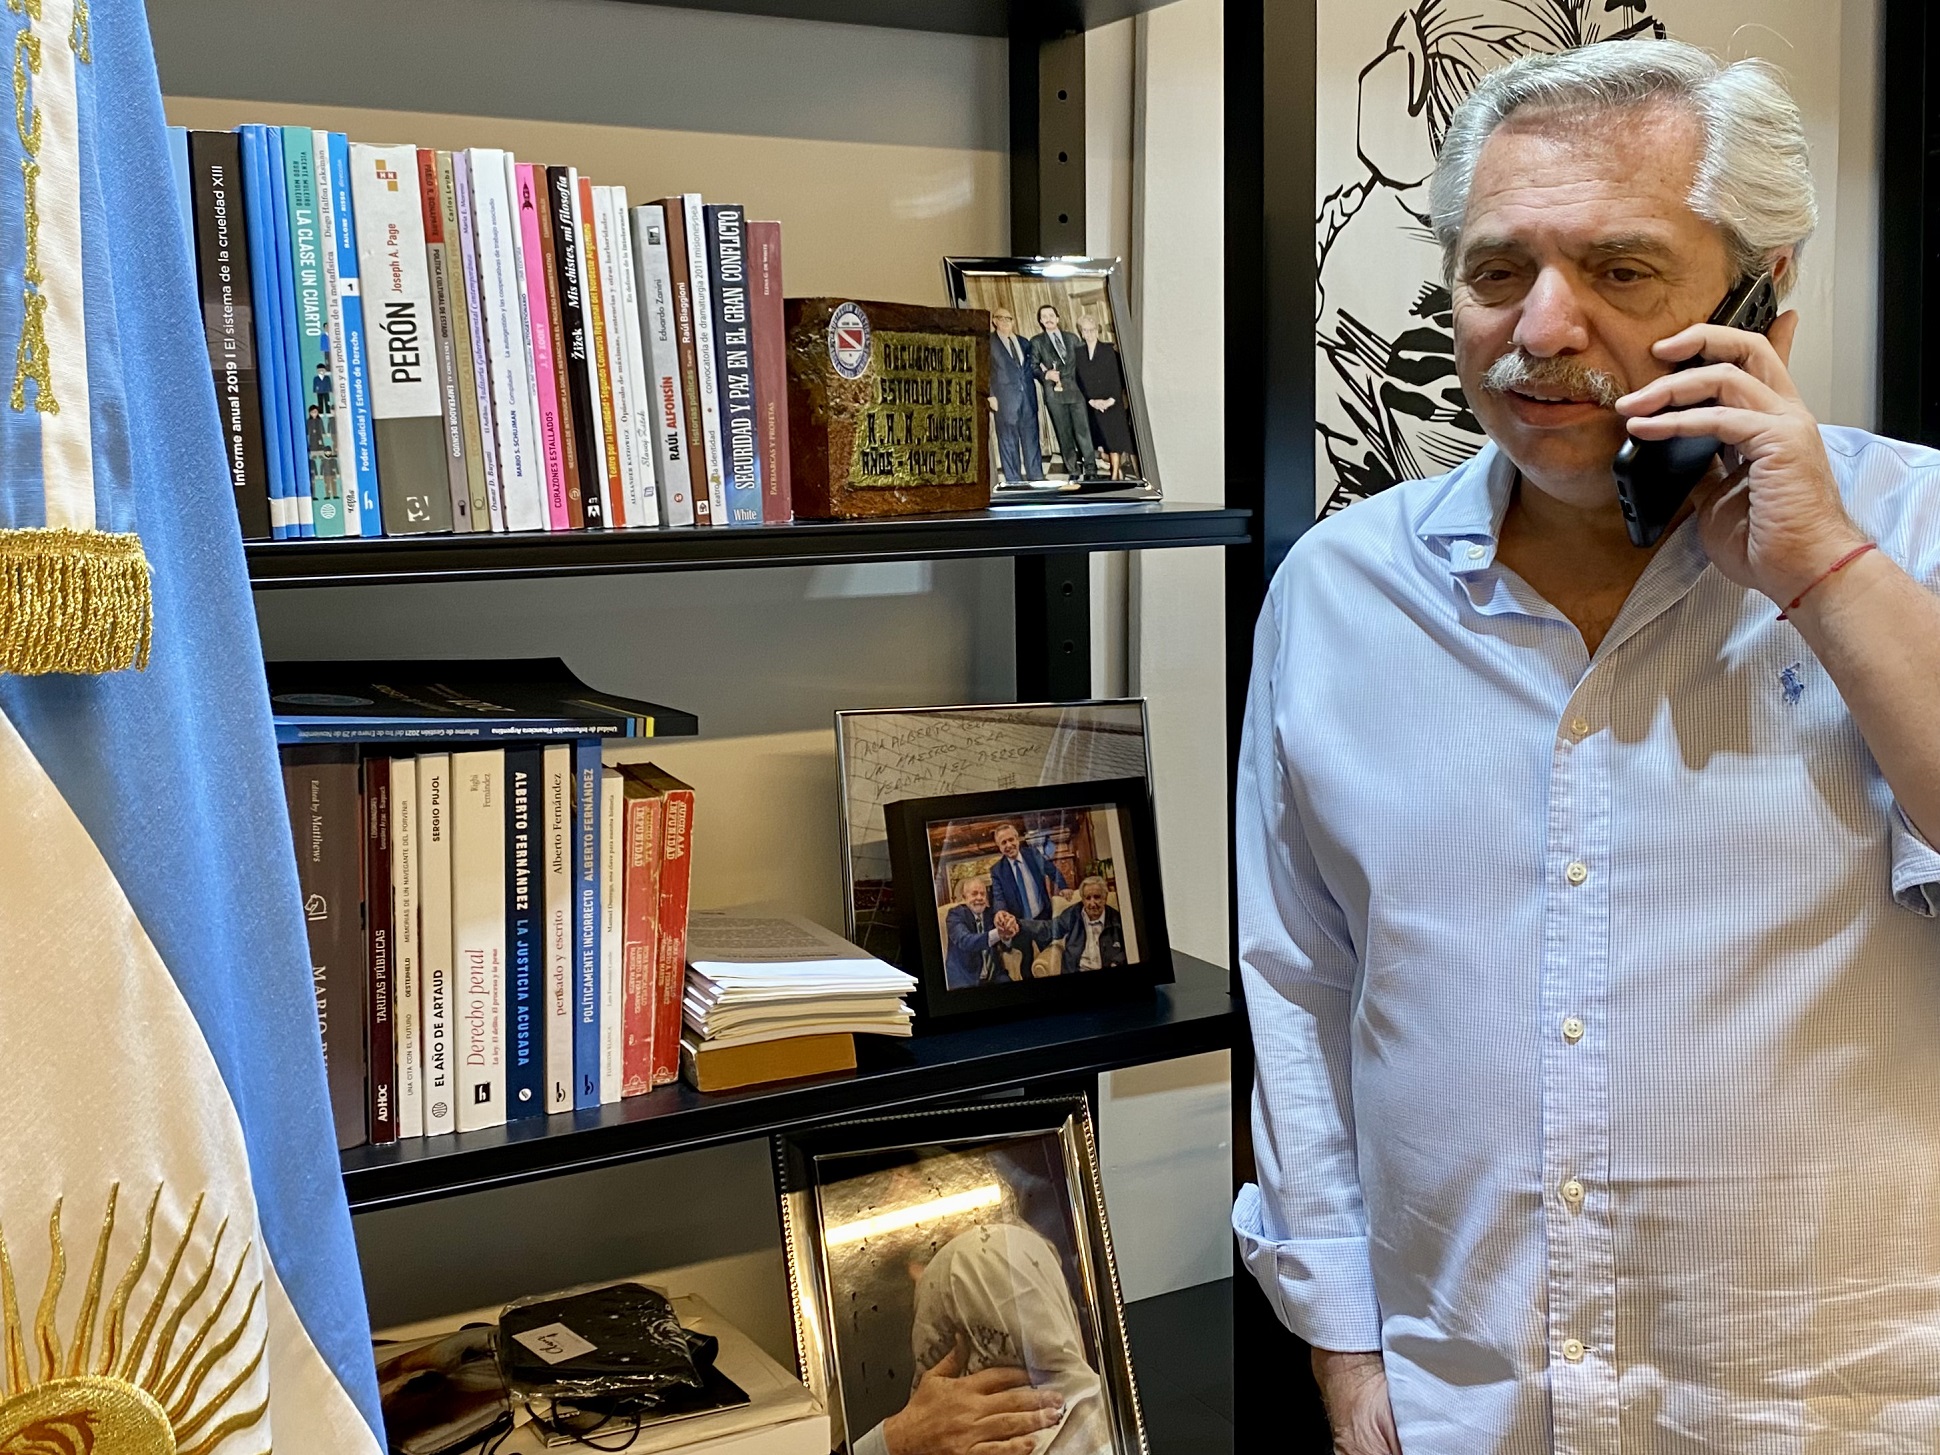 El presidente Alberto Fernández felicitó telefónicamente al triunfador en las elecciones presidenciales en Chile, Gabriel Boric